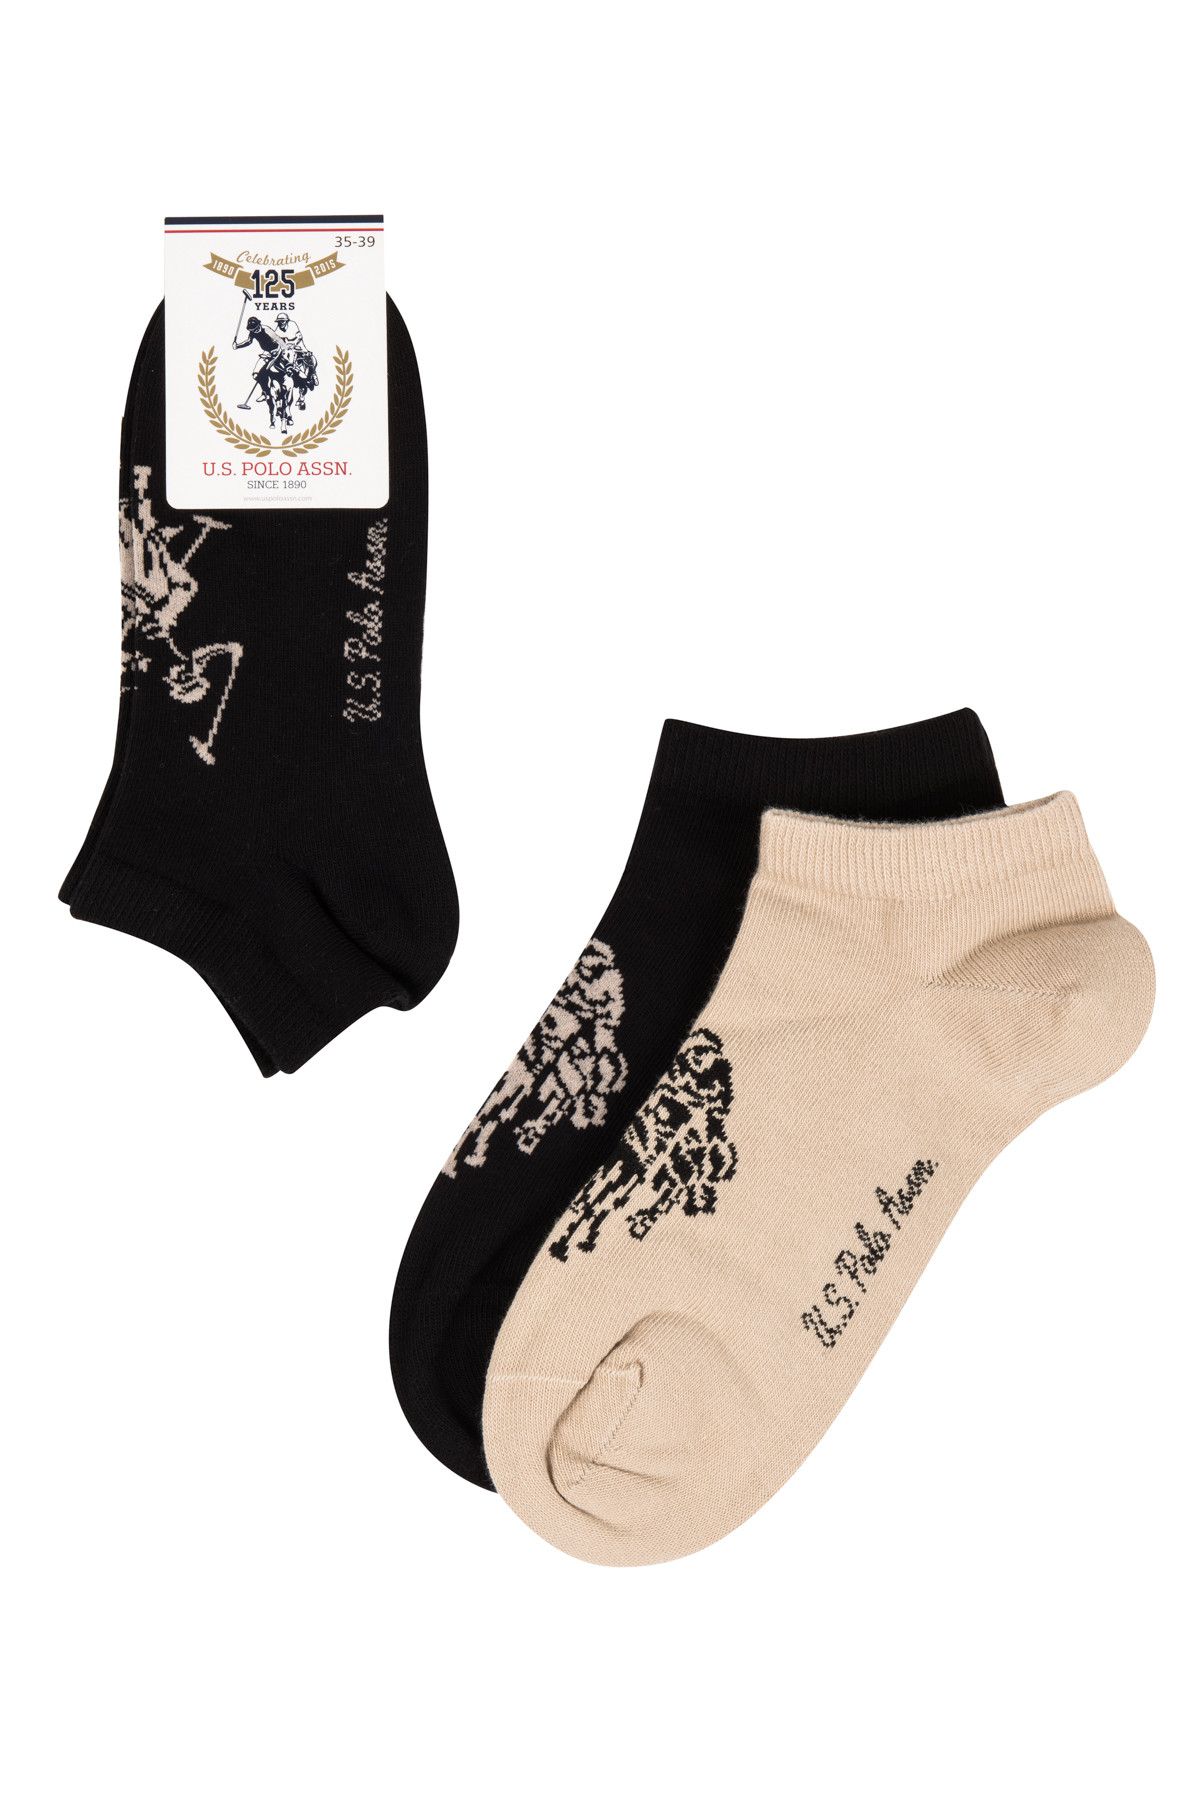 U.S. Polo Assn. Kadın Siyah - Bej Desenli Patik Çorap  SC16FW02CS020044